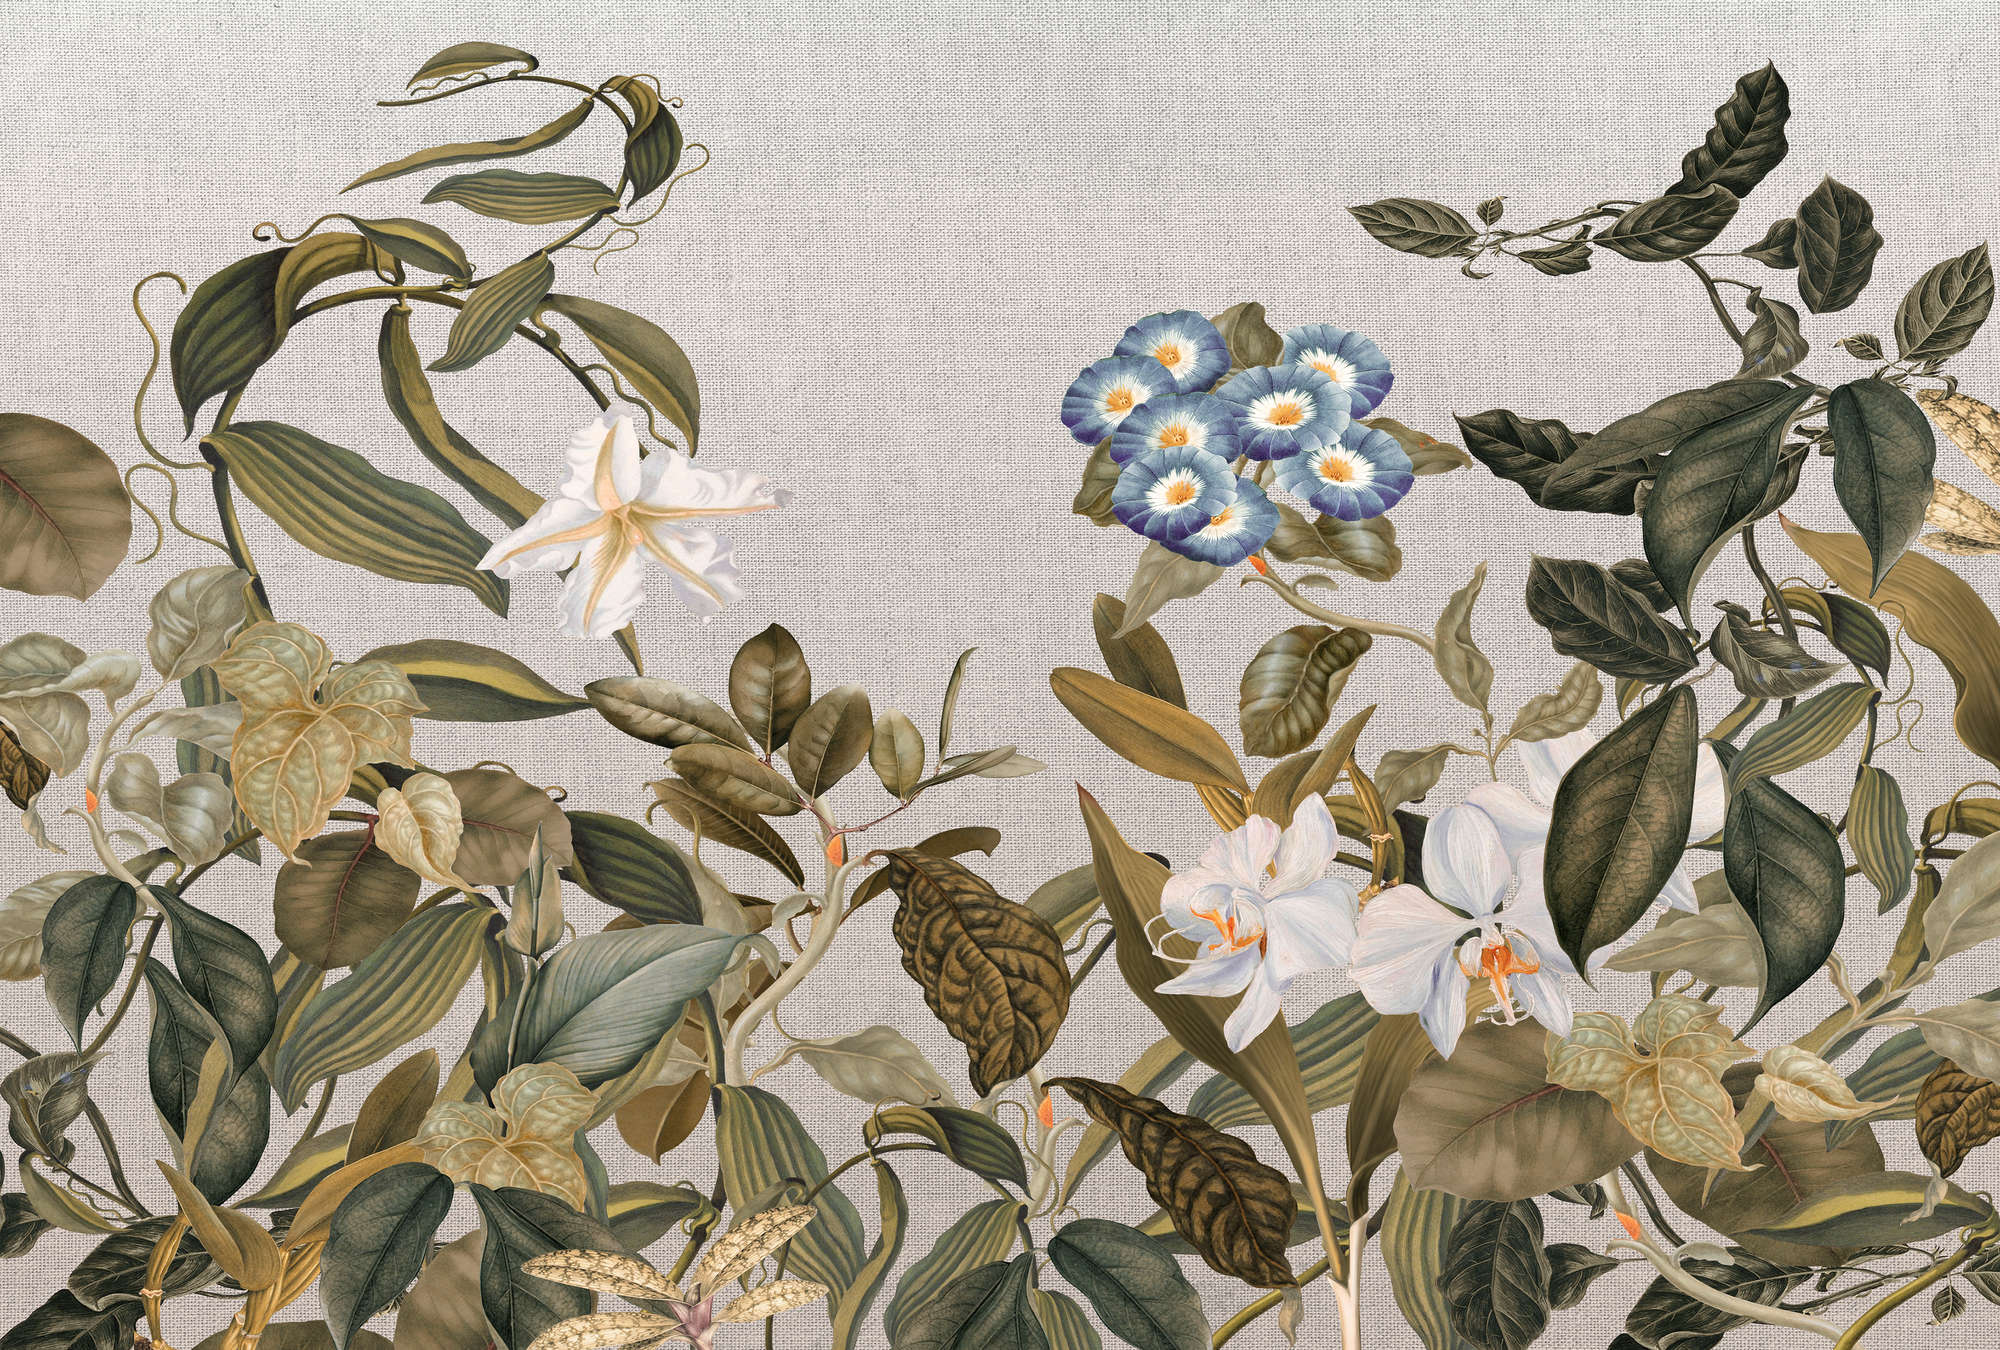             Muurschildering Botanische Stijl Bloemen, Bladeren & Textiel Look - Groen, Grijs, Blauw
        